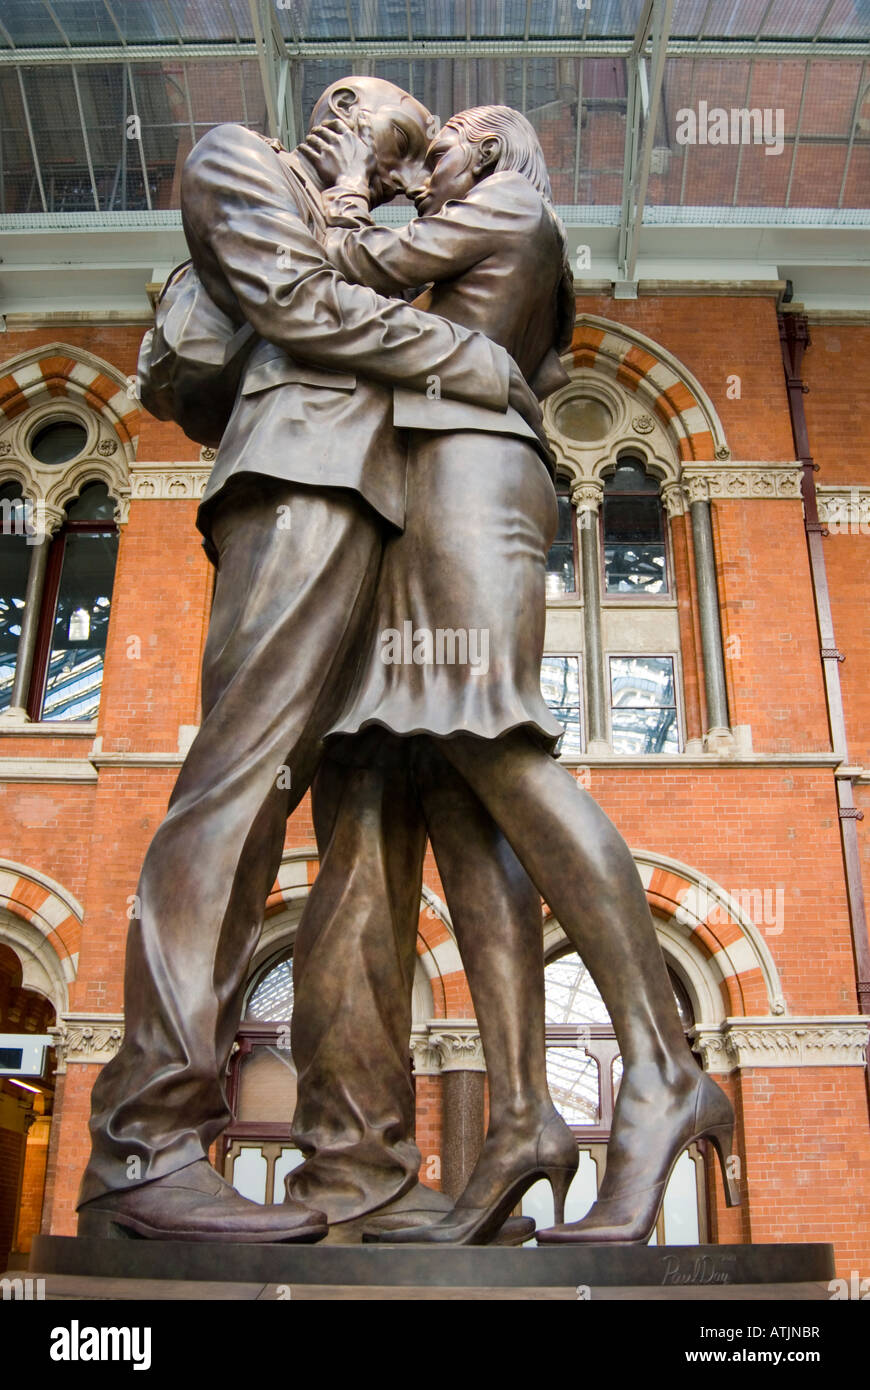 Statua in bronzo il Meeting Place nella stazione ferroviaria internazionale di St Pancras, Londra, Regno Unito Foto Stock